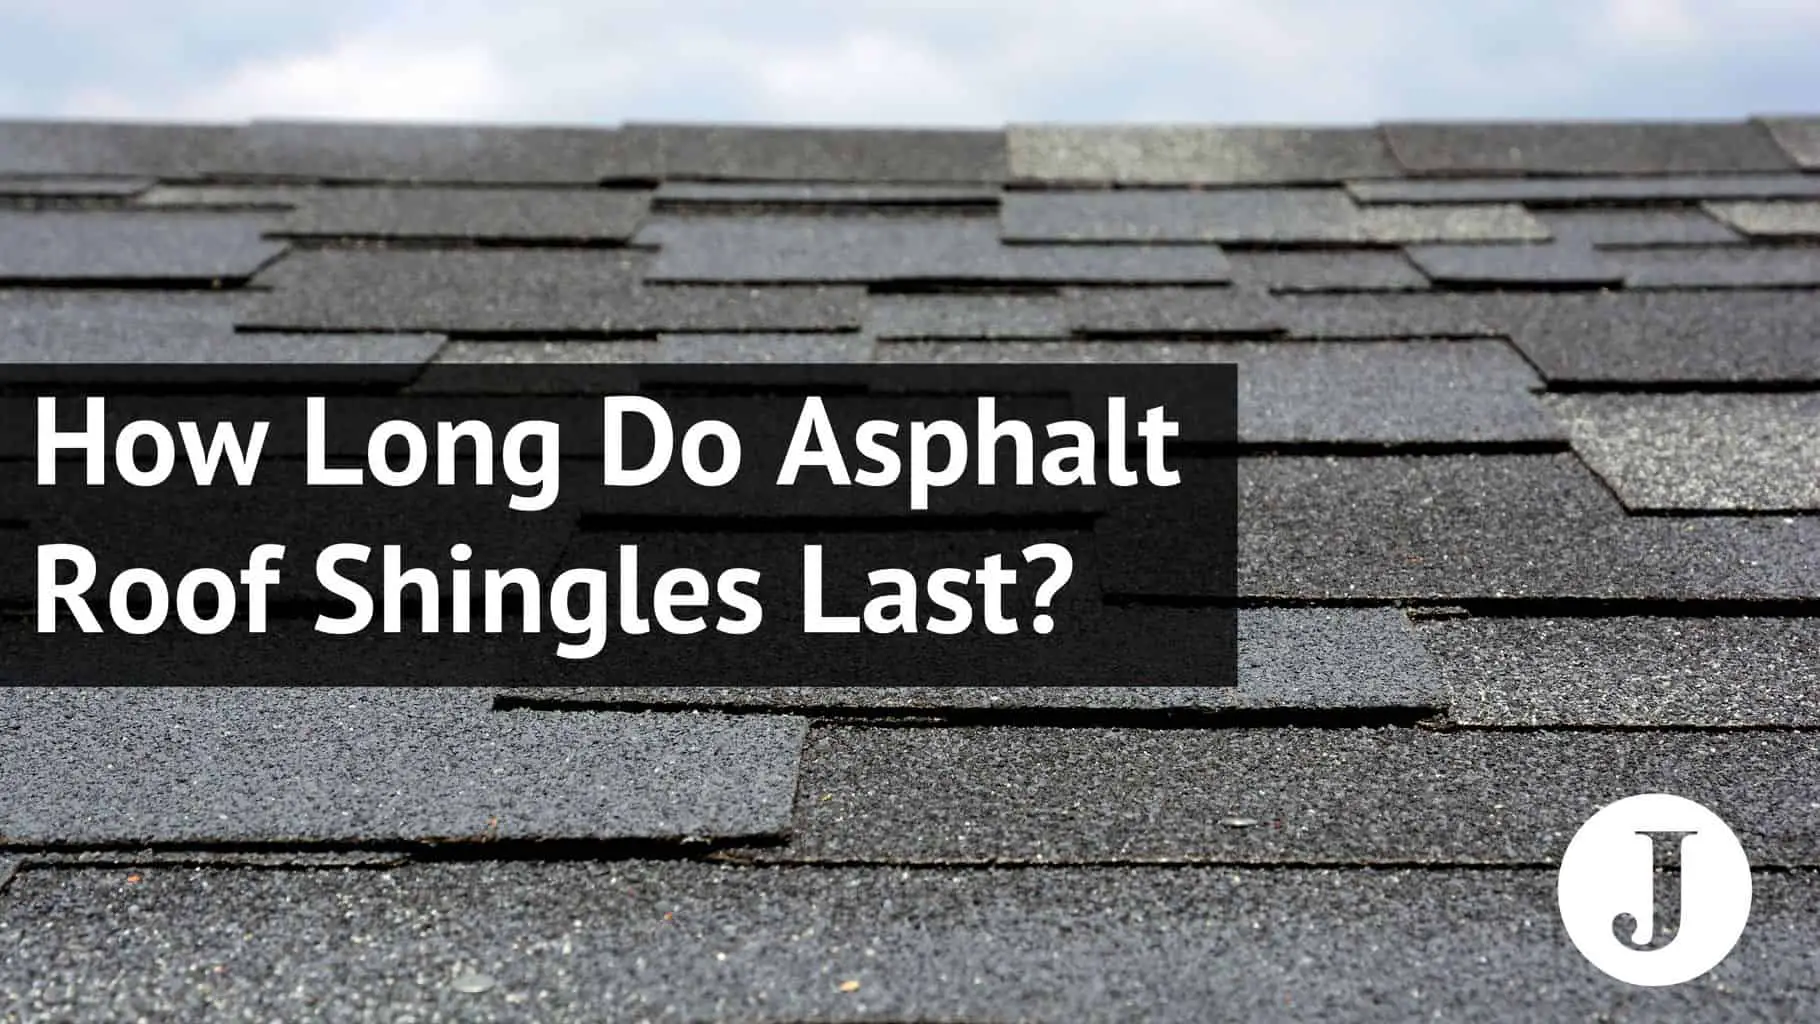 How Long Do Asphalt Roof Shingles Last?